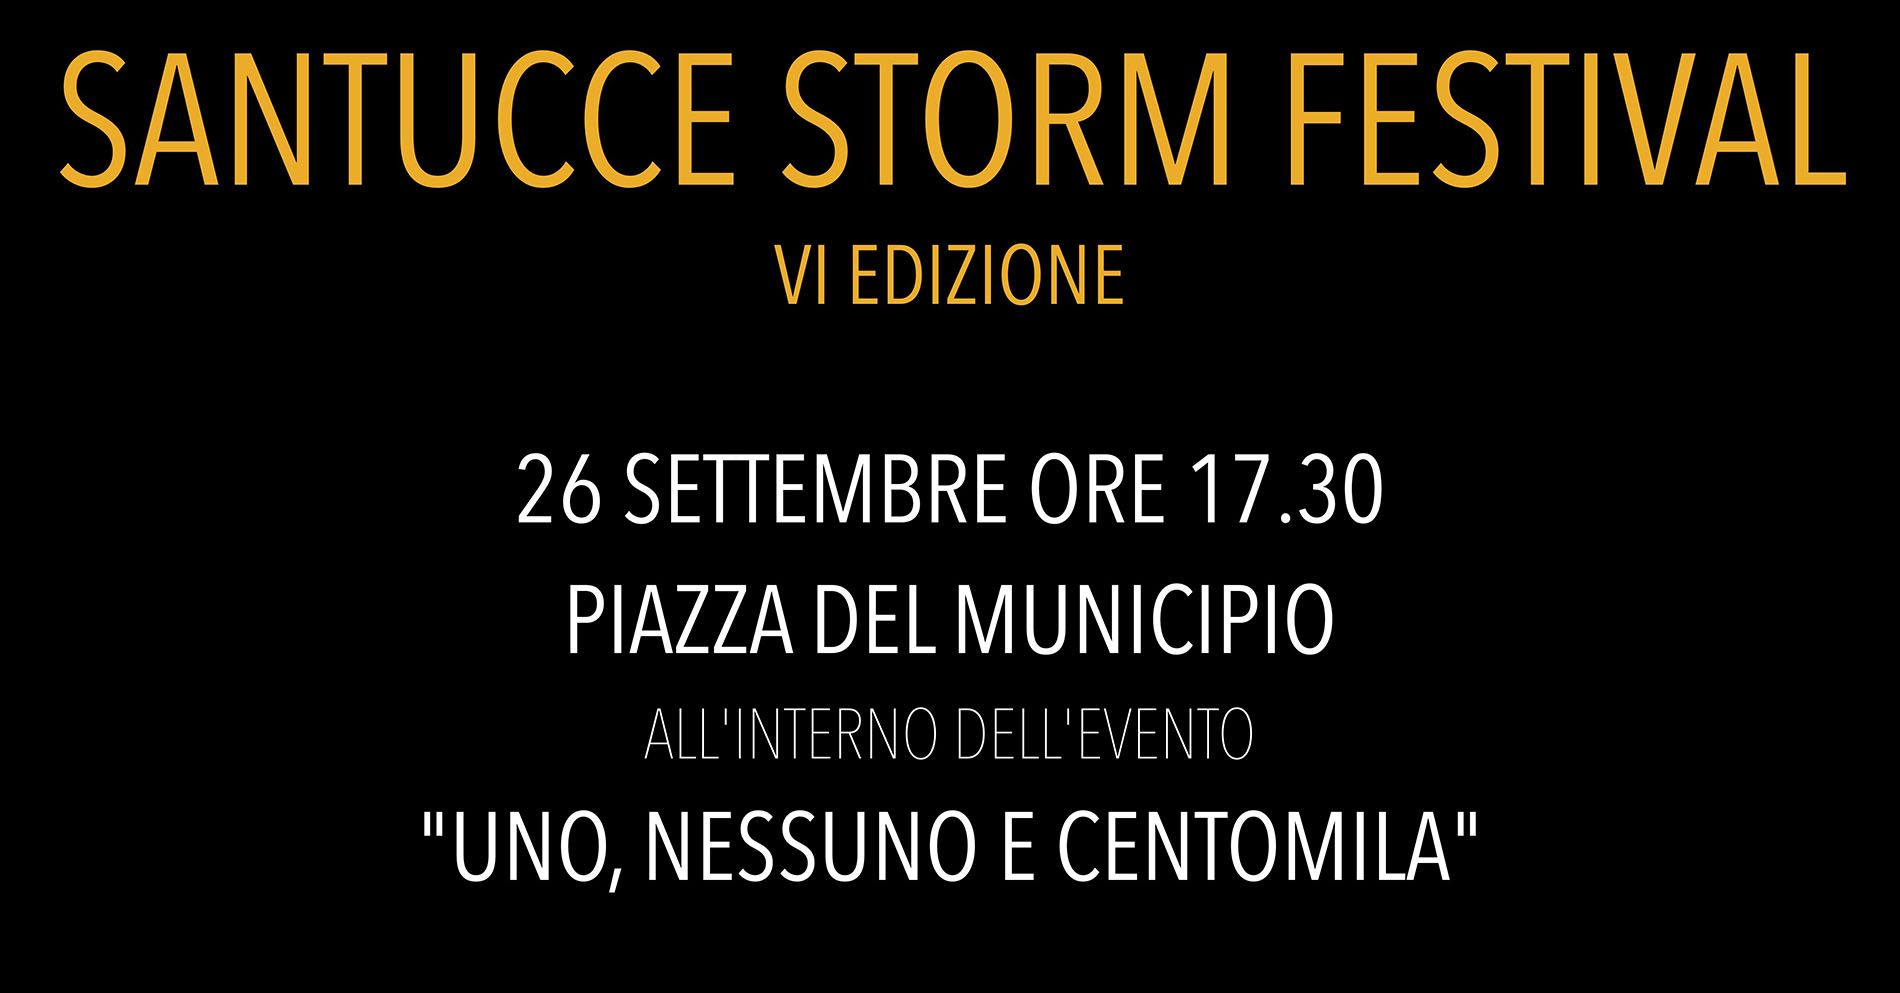 Castiglion Fiorentino: Santucce Storm Festival VI edizione